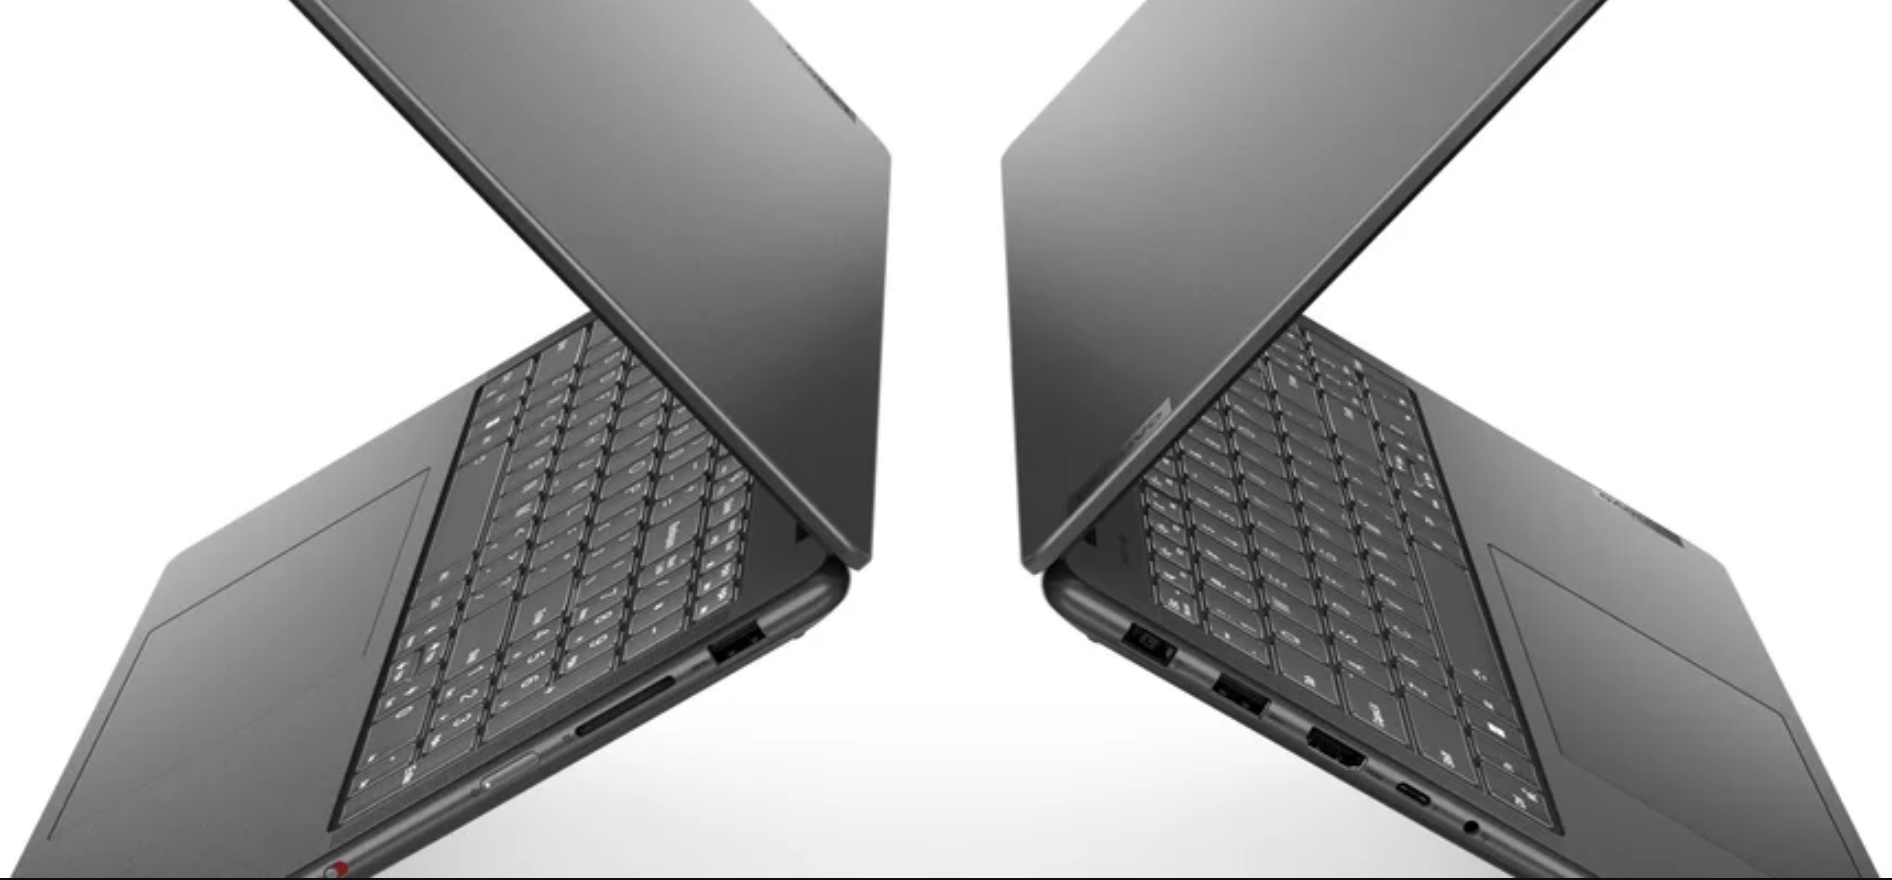 Najnowsza linia laptopów Lenovo Yoga pozwala twórcom realizować się na każdym etapie ich działalności